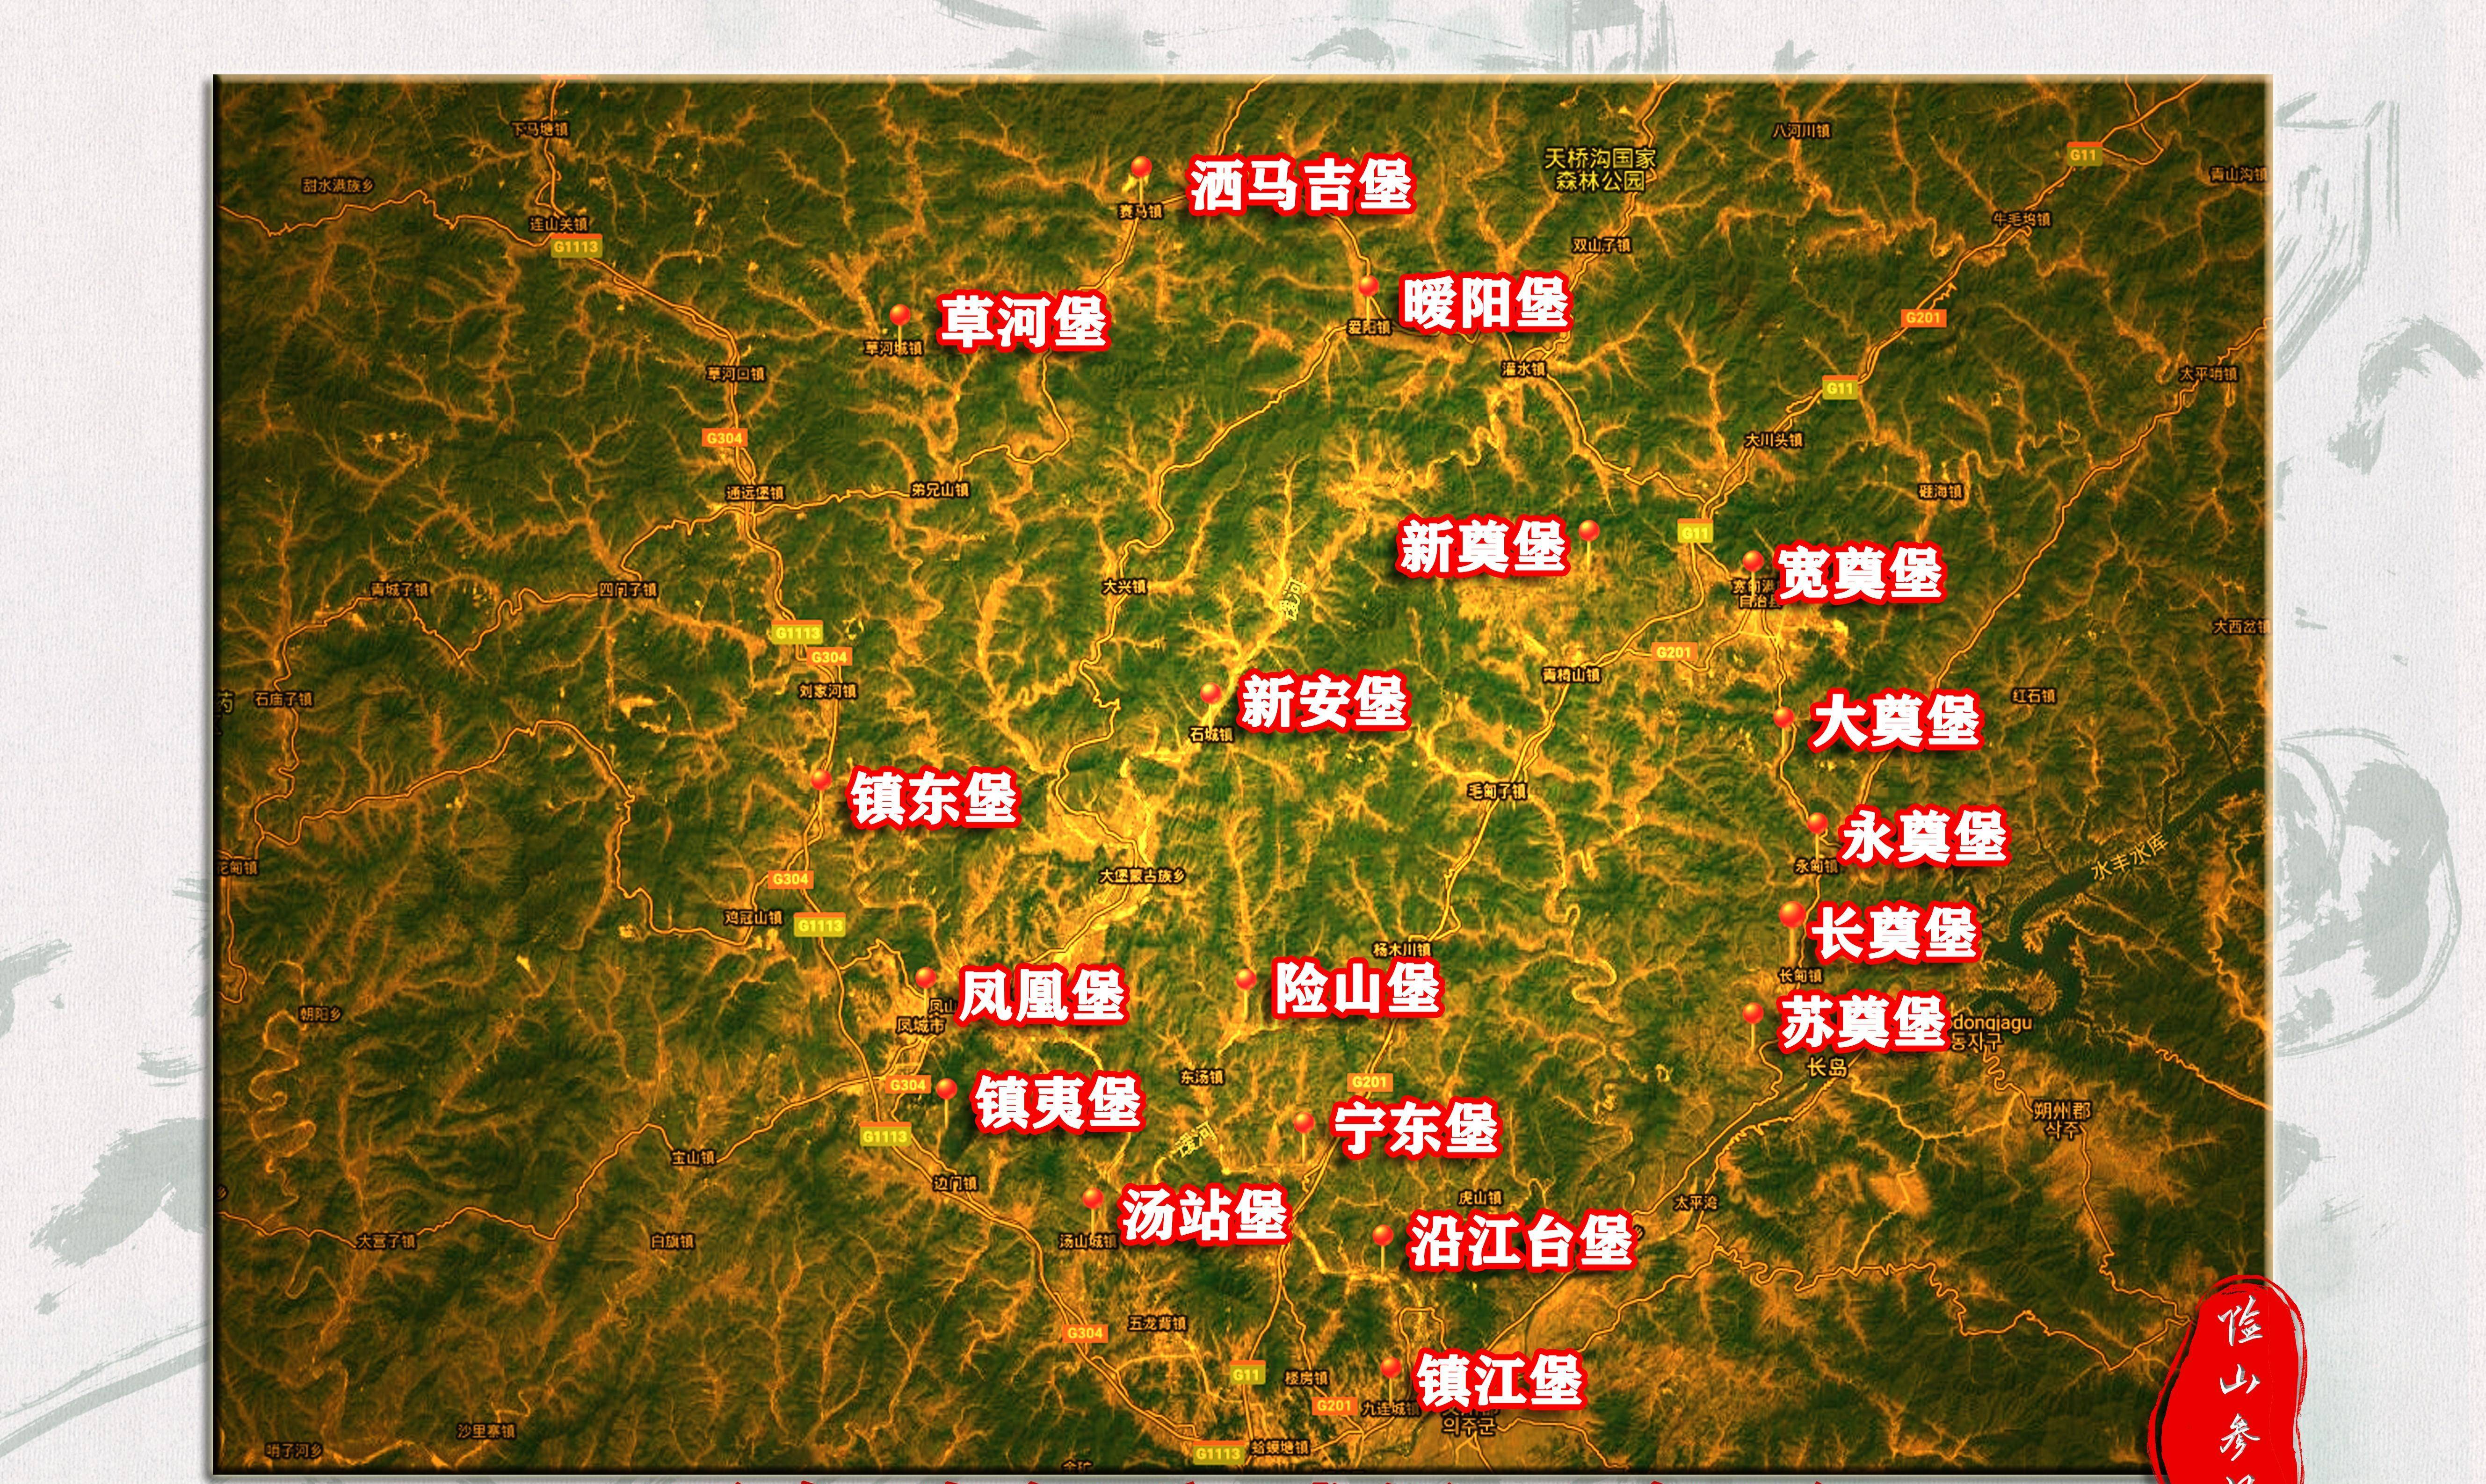 明长城辽宁段地图图片